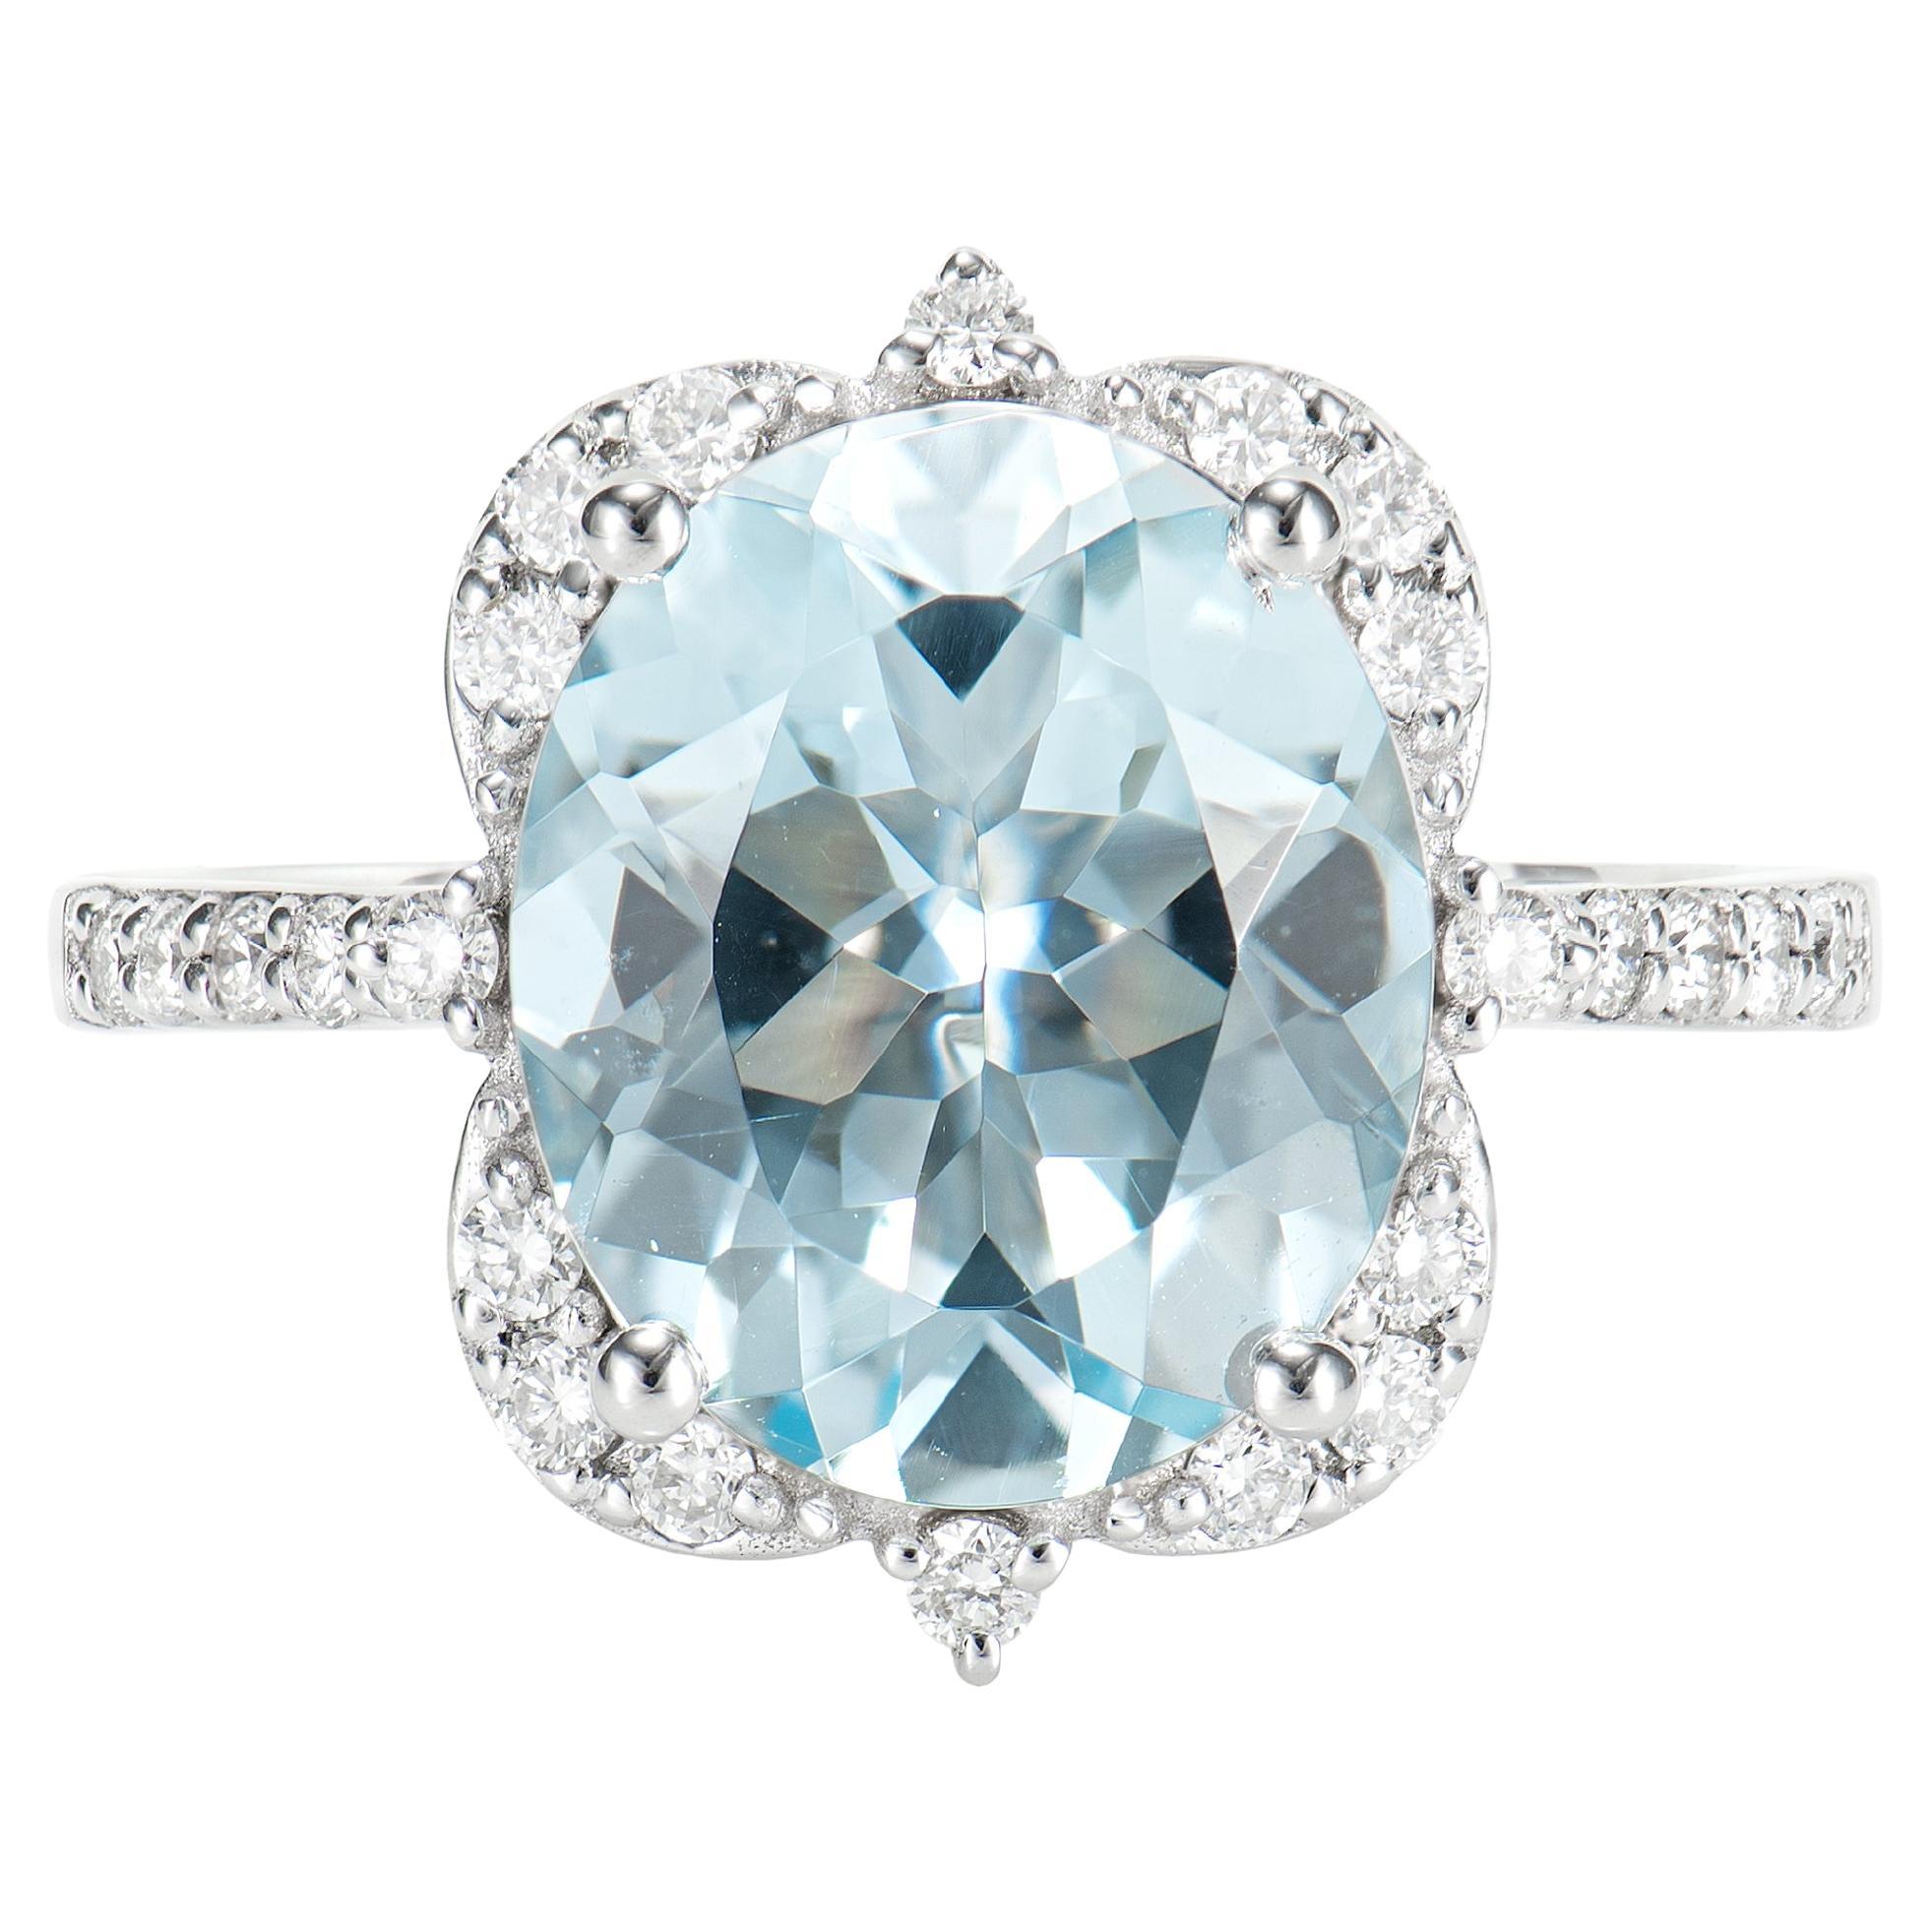 3.73 Carat Aquamarine Elegant Ring in 18 Karat White Gold with White Diamond.